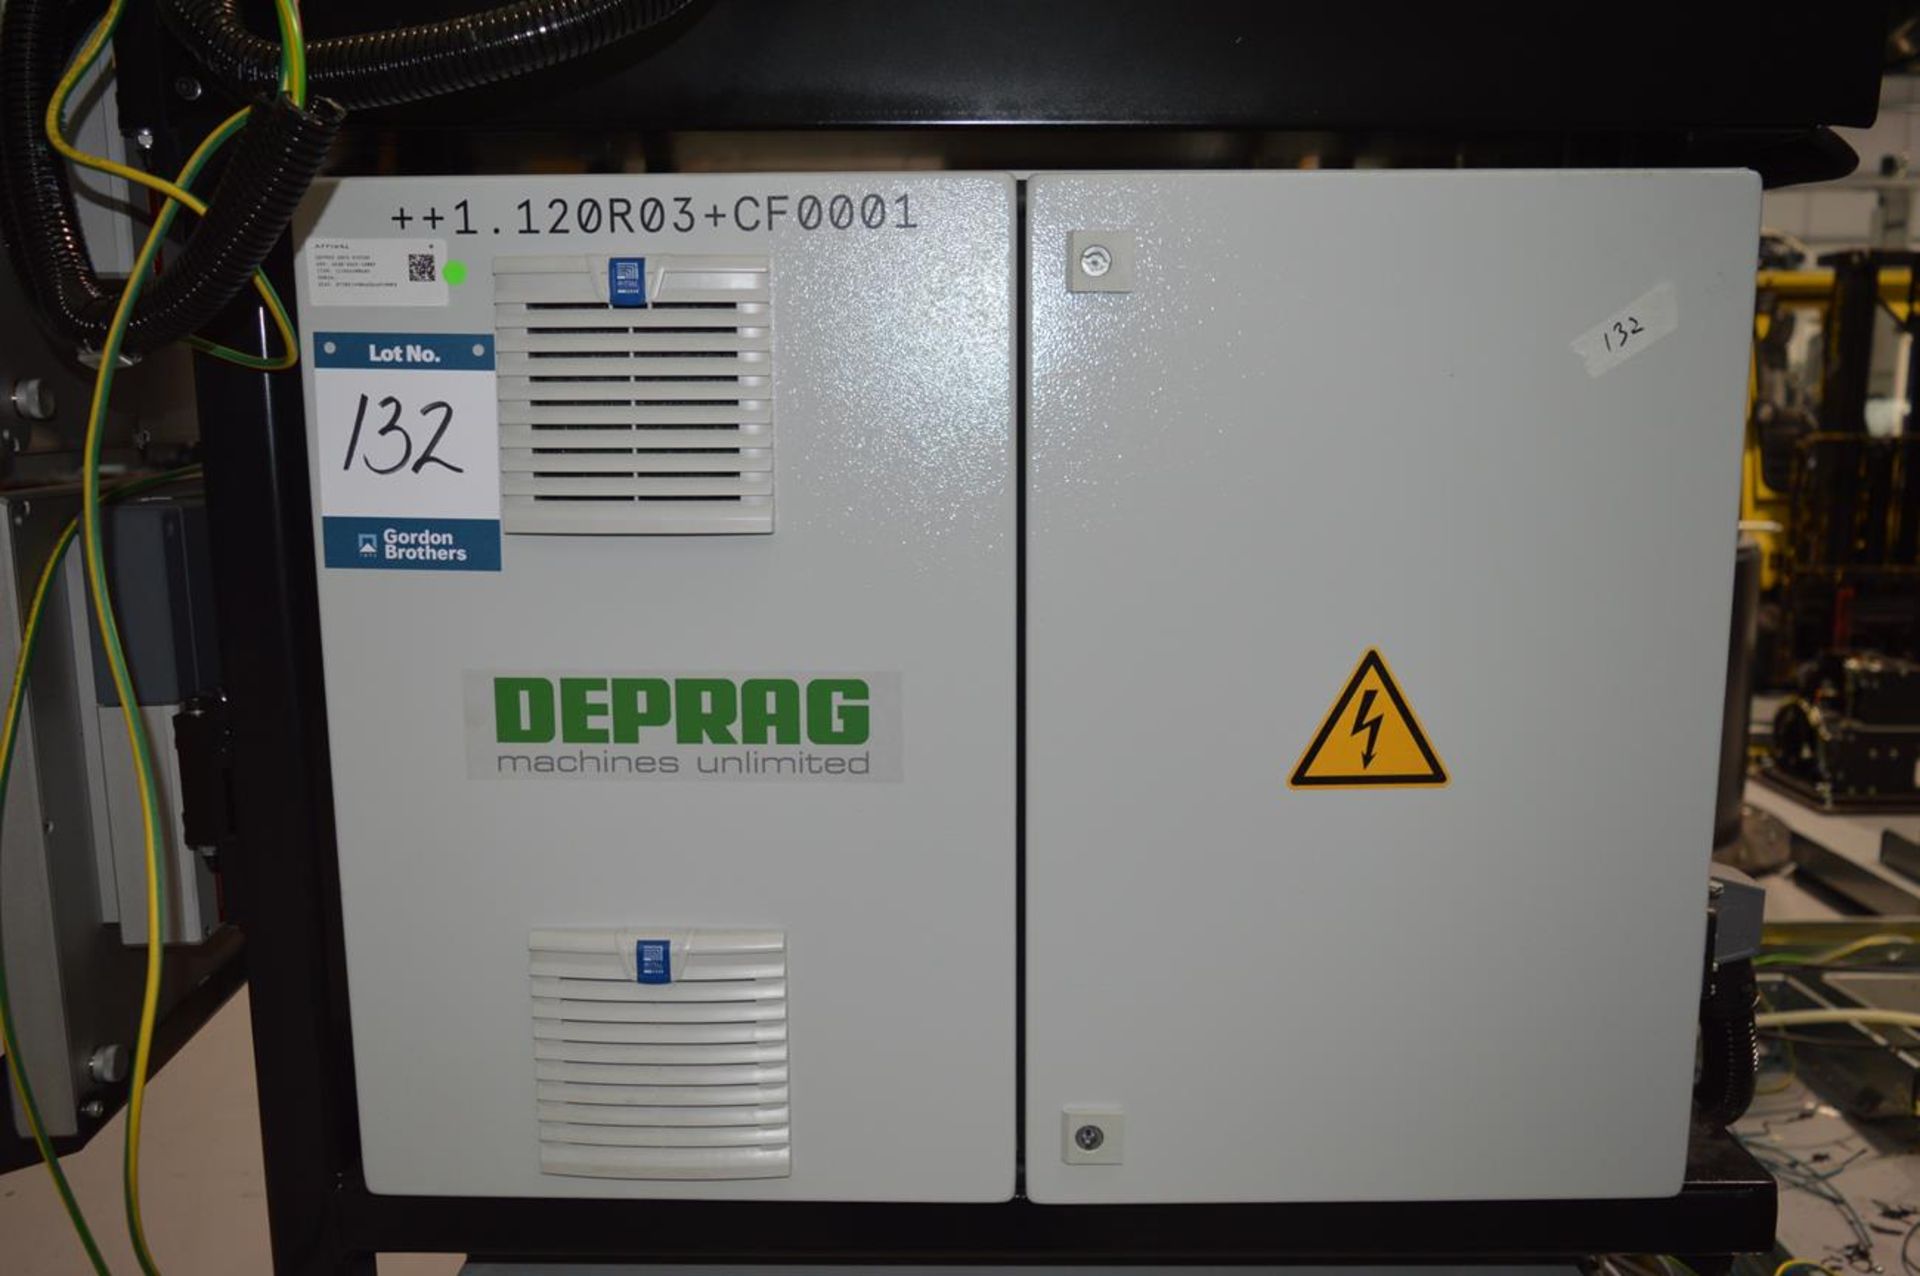 Deprag, ADFS-2-1508-1-0 Flowform adaptive DFS controller, Serial No. 1393277/21 with bolt assembly